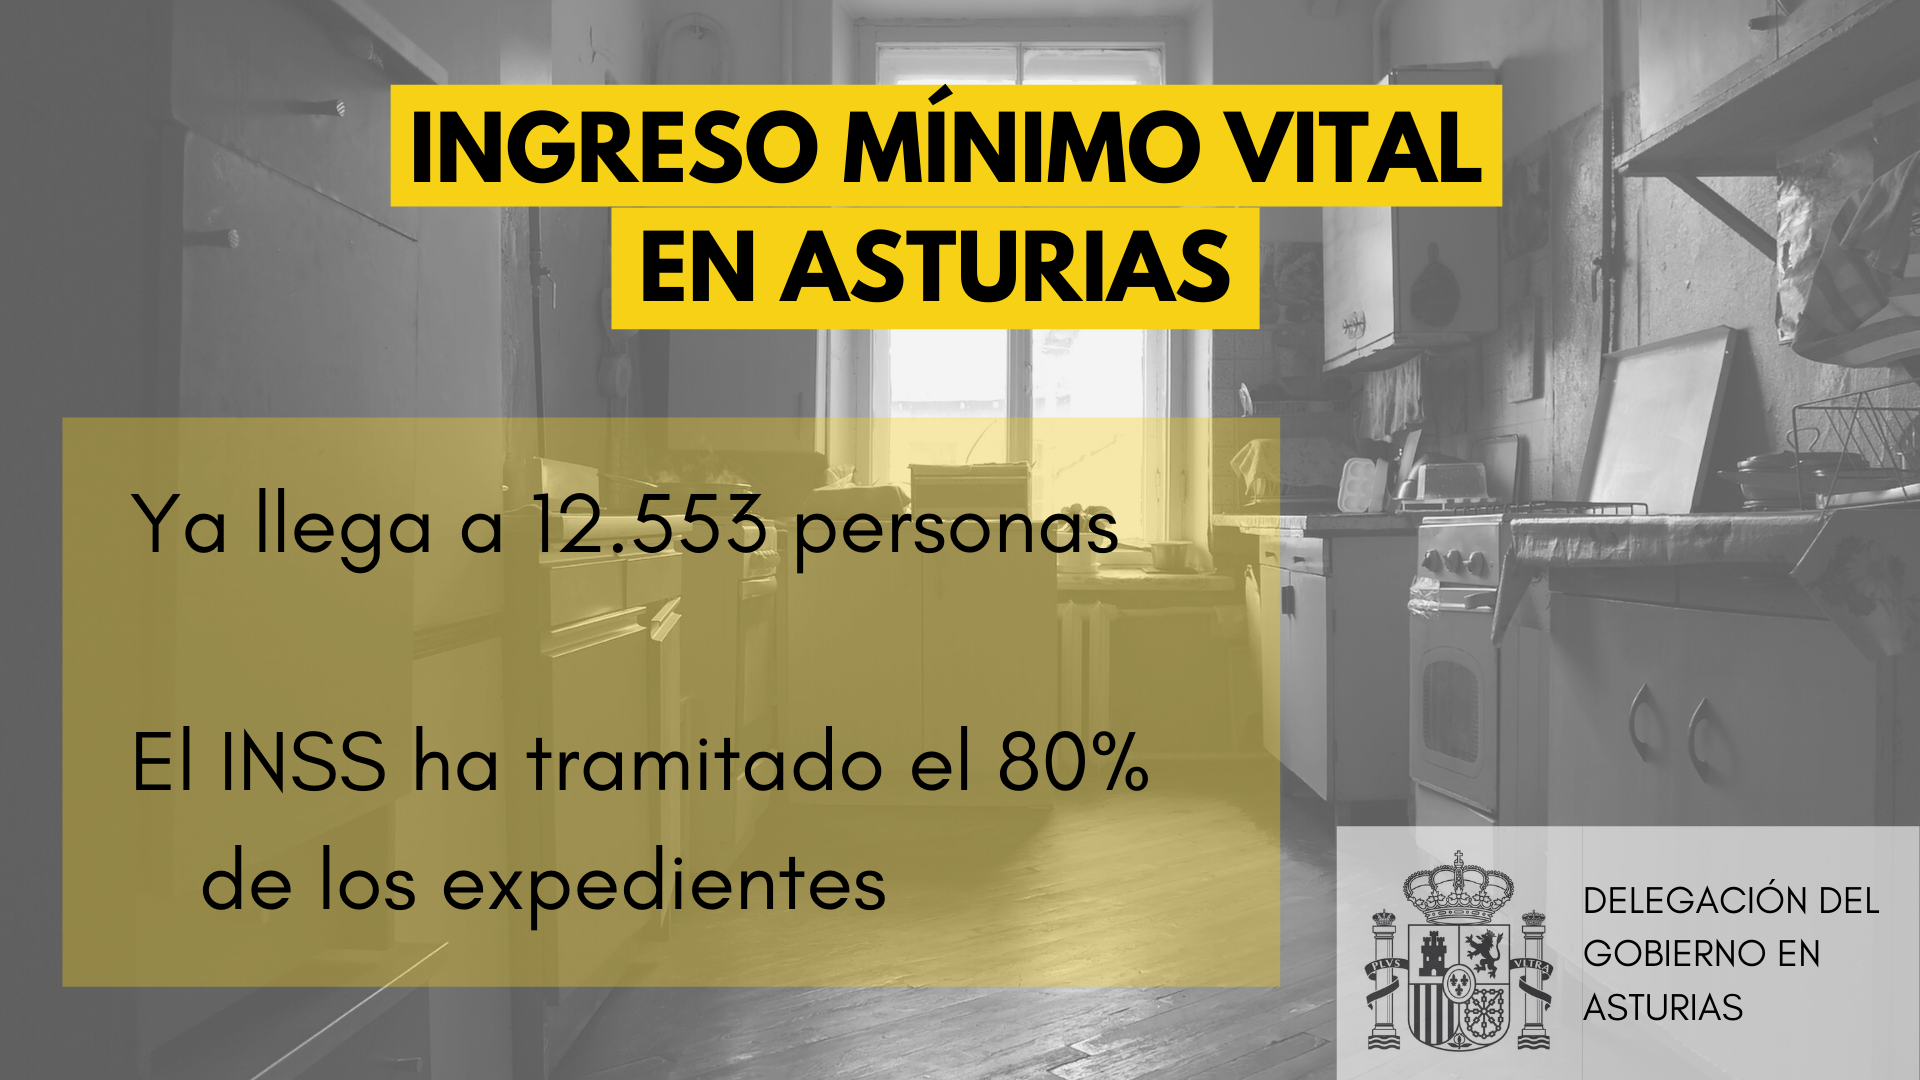 El Ingreso Mínimo Vital ya llega a 12.553 personas en Asturias